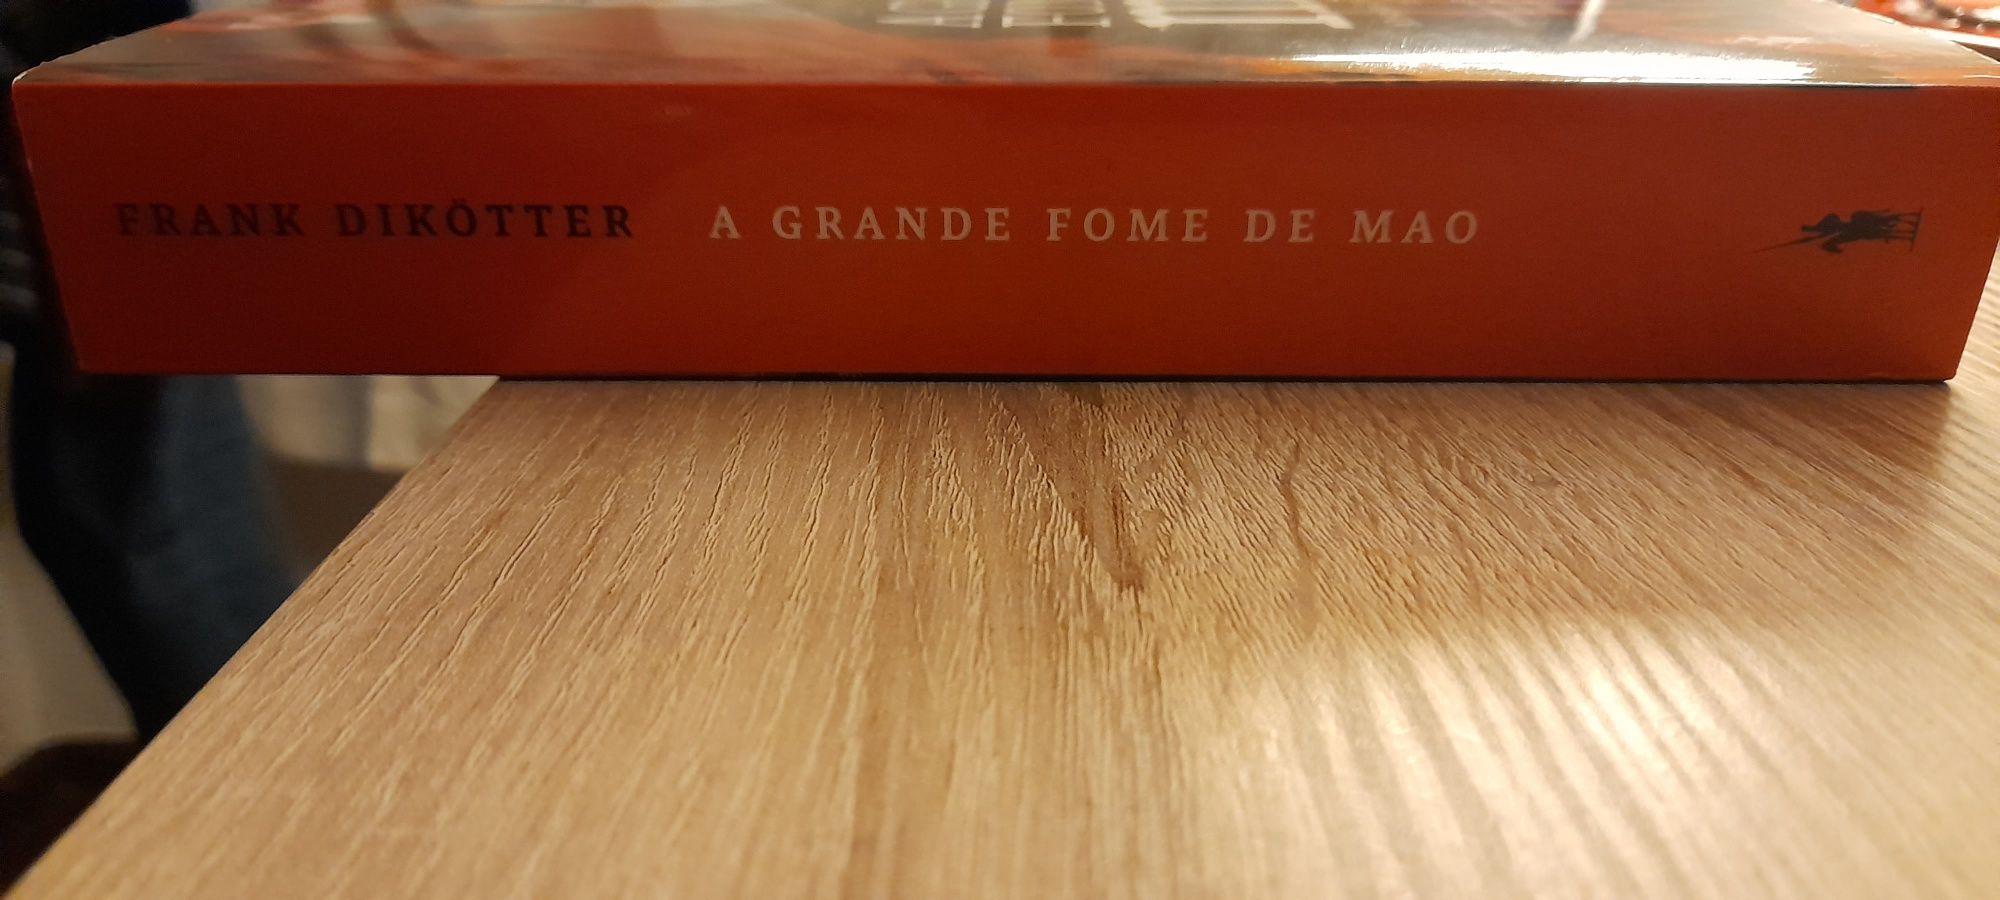 Livro A Grande Fome de Mao